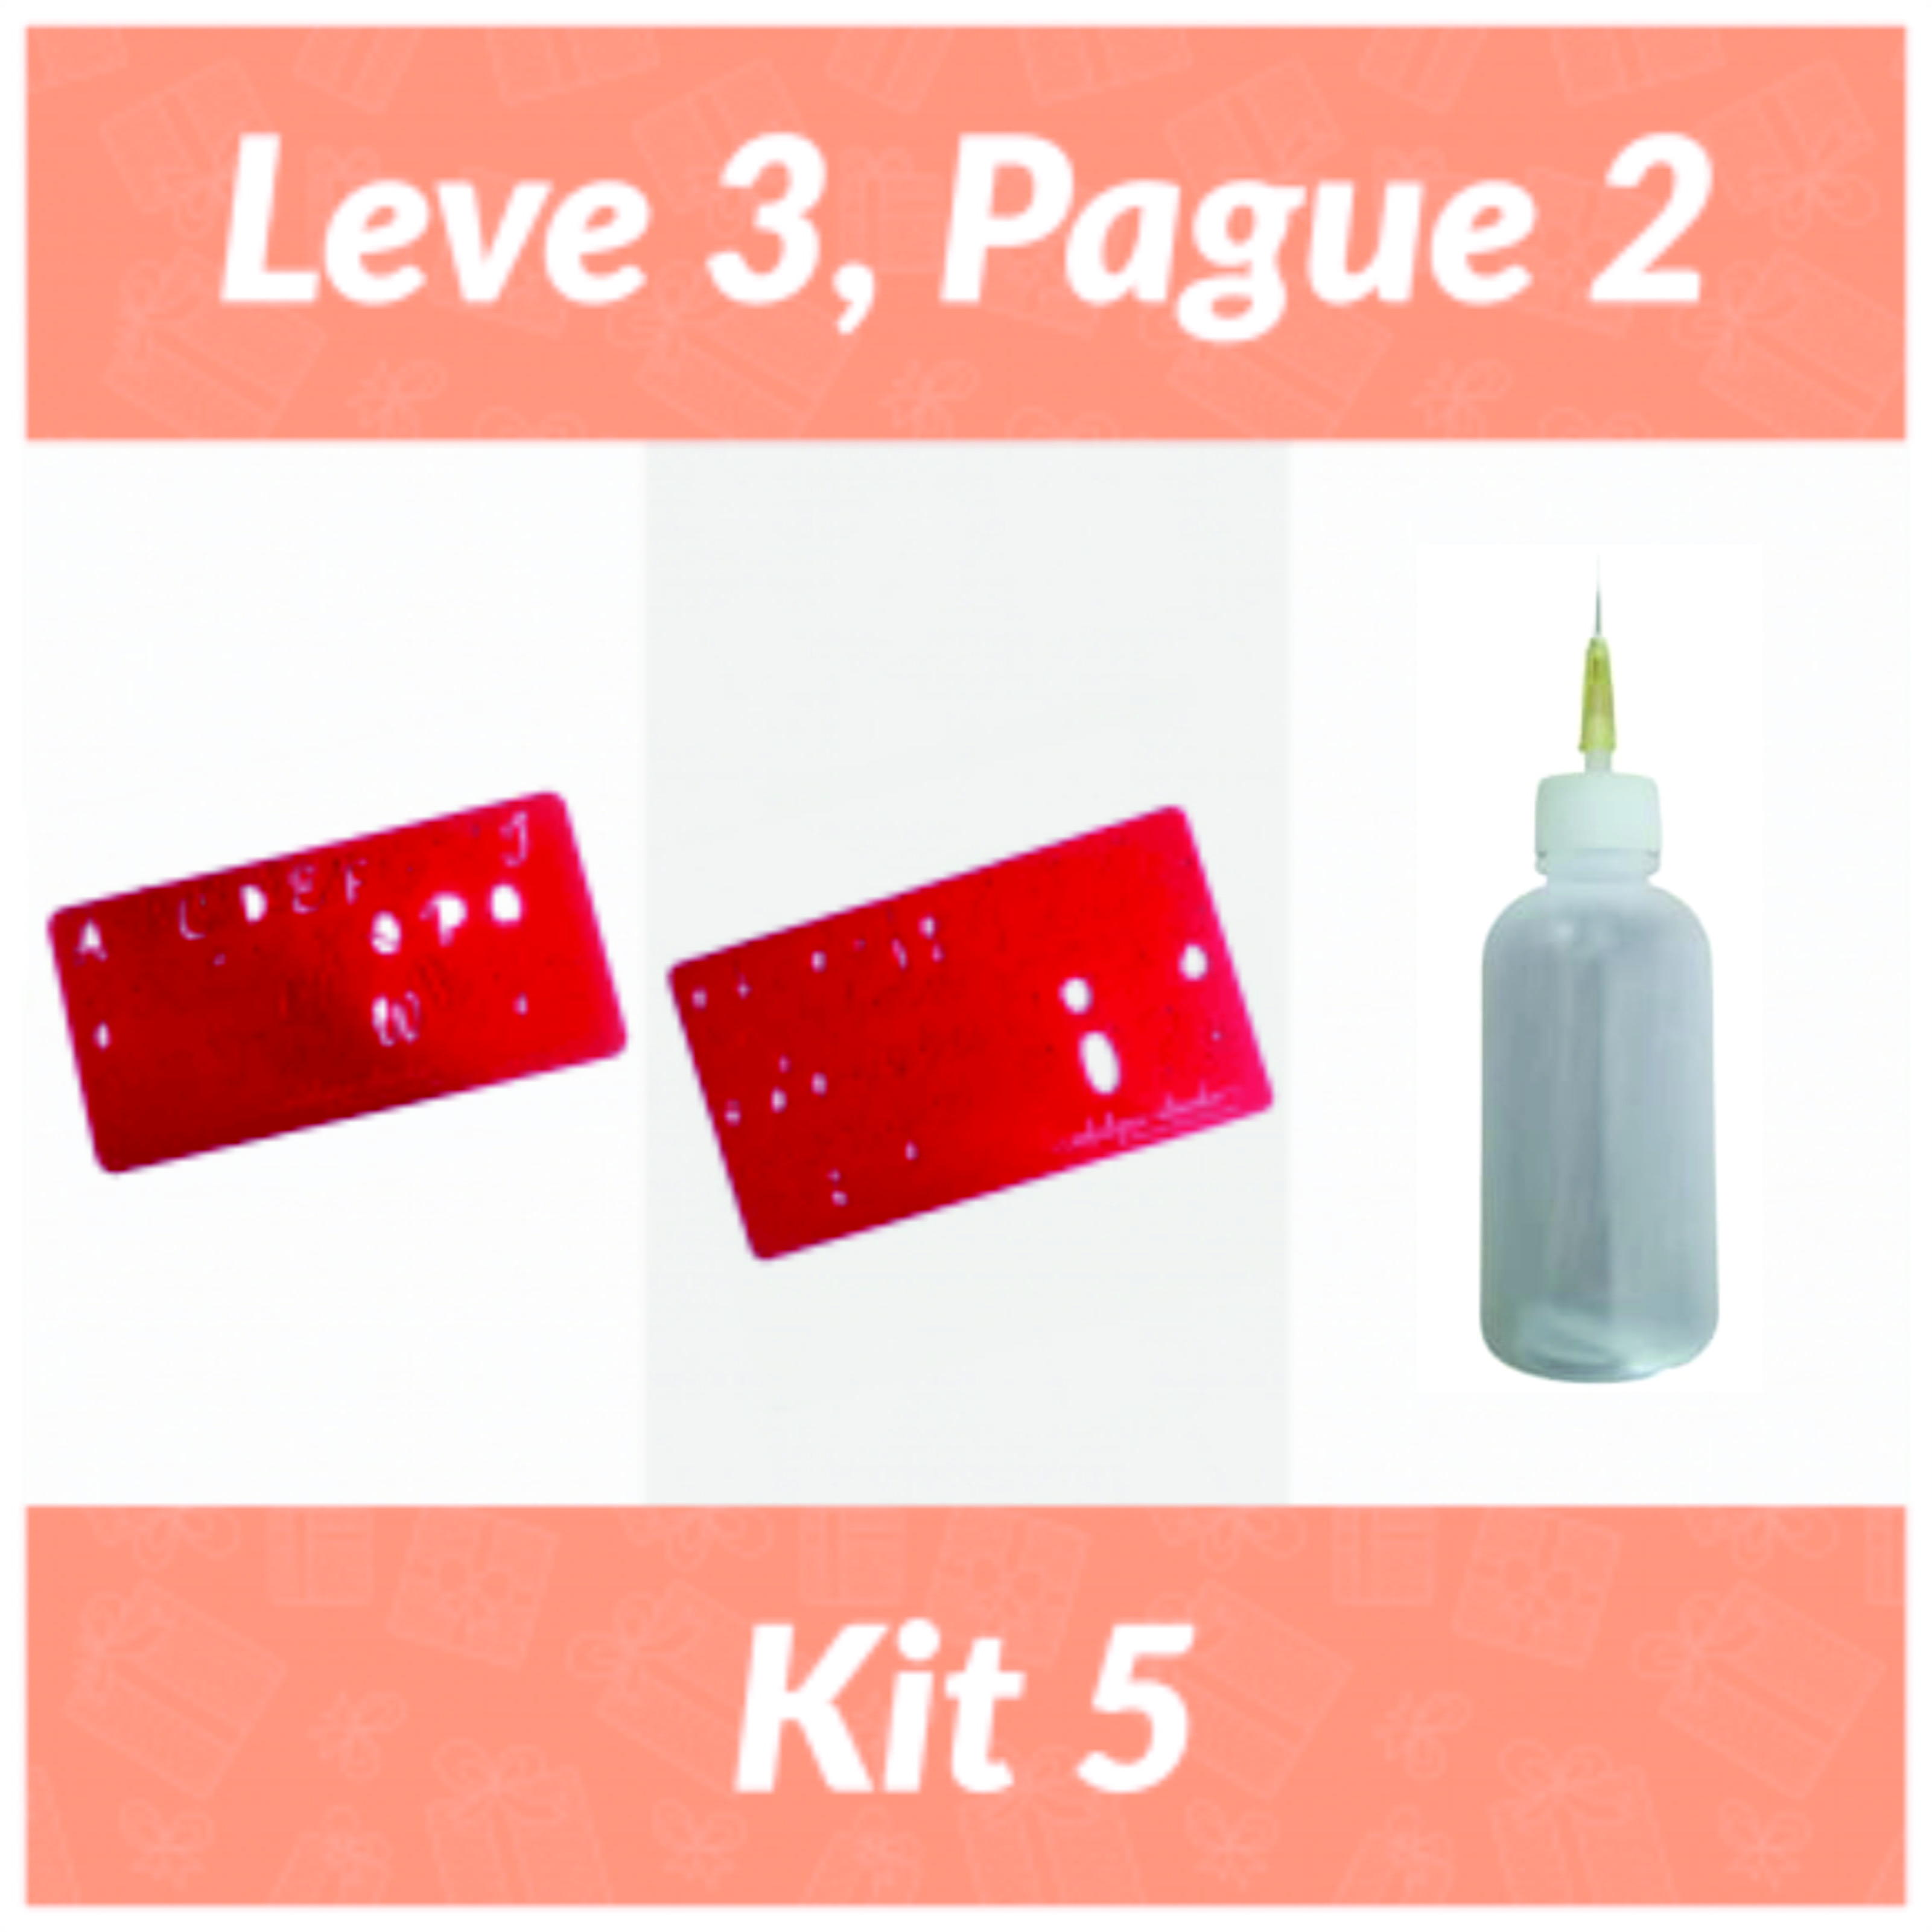 Kit 5 Leve 3 Pague 2